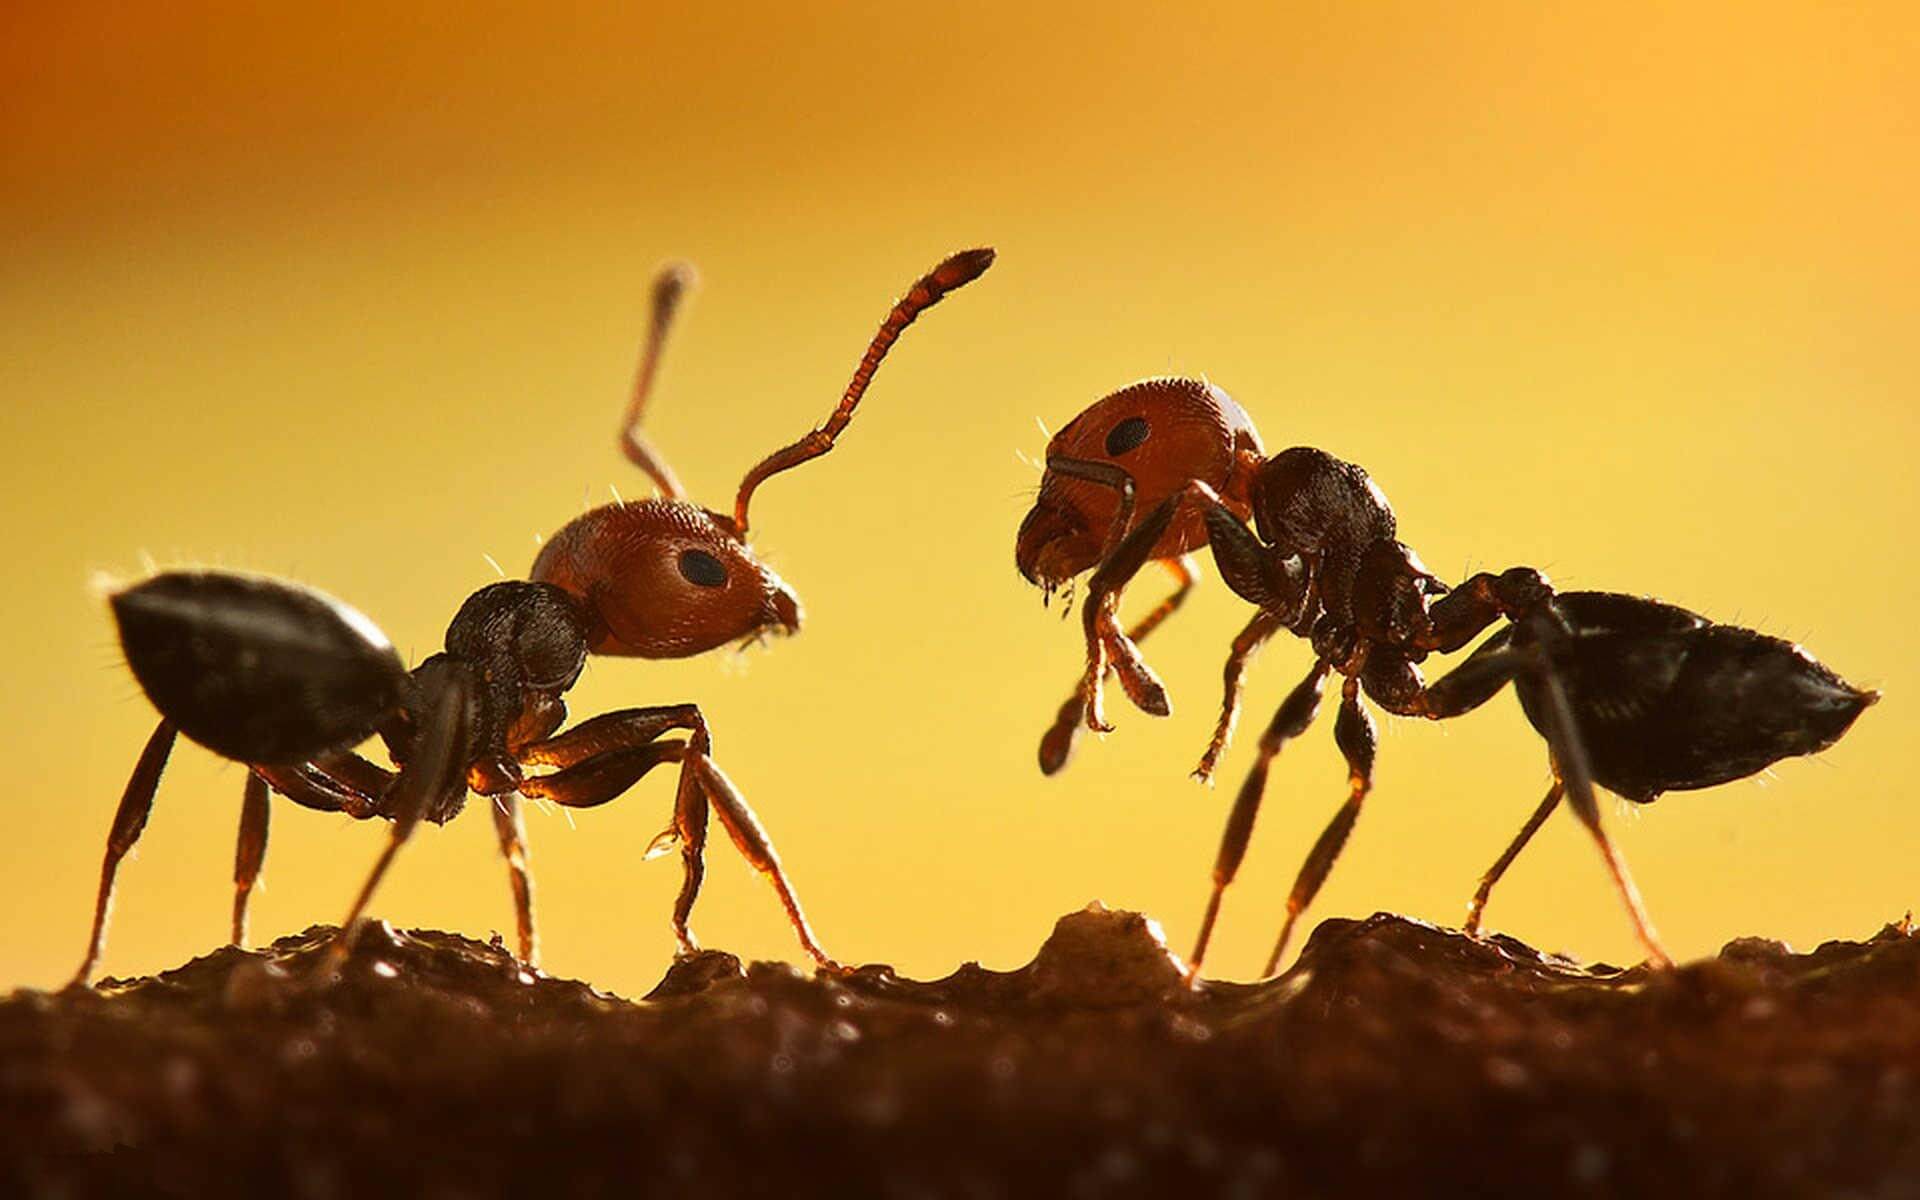 انشا دوم در مورد دیدن مورچه ای که باری را می کشد 